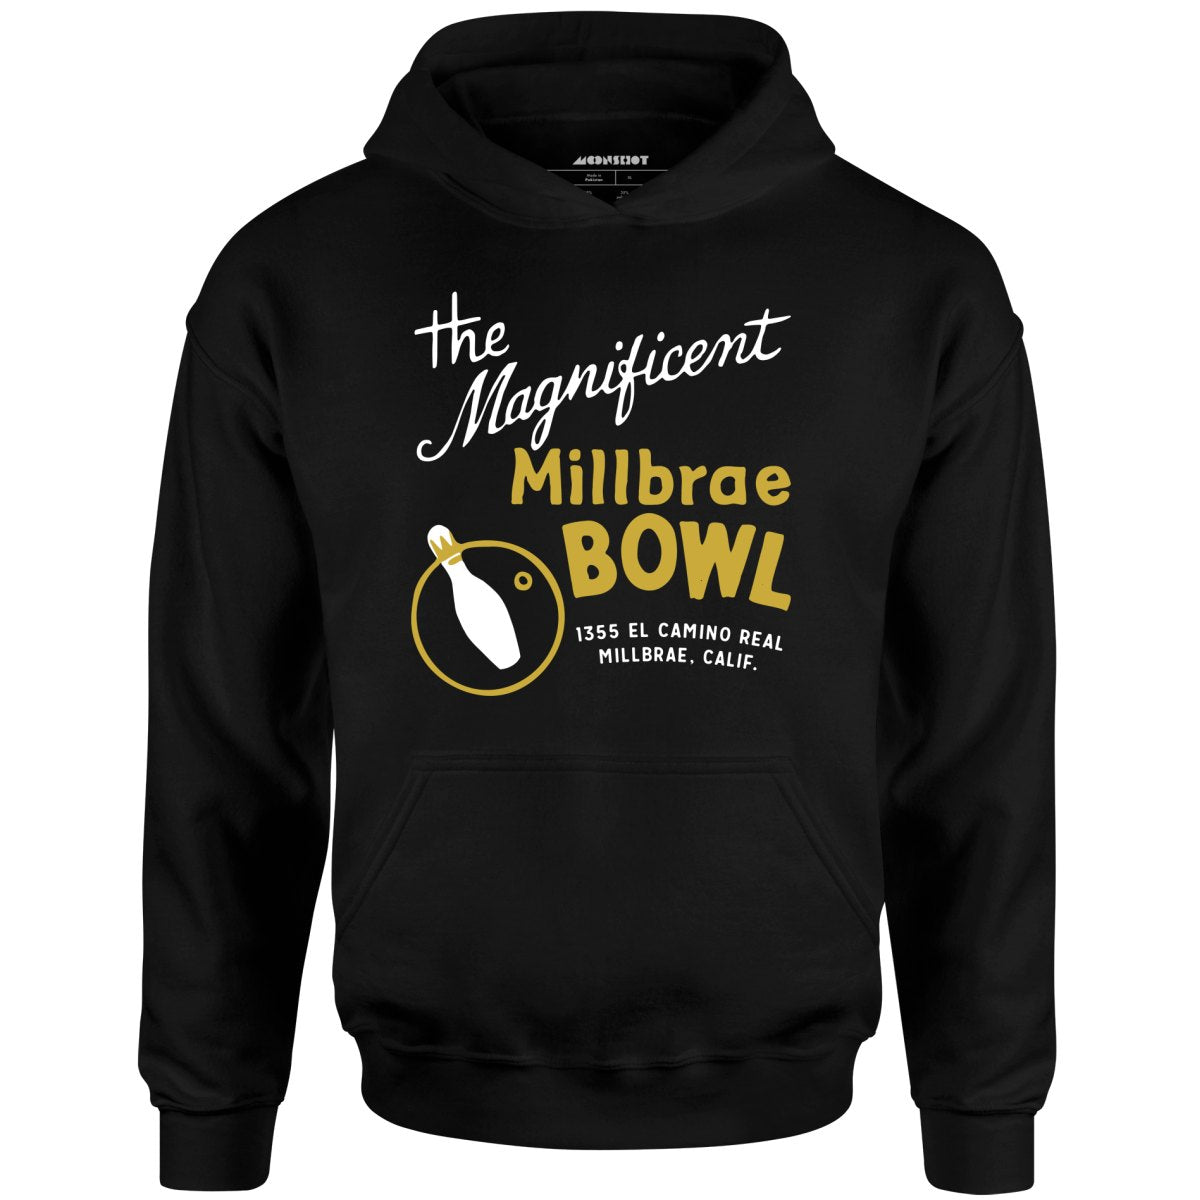 Millbrae Bowl - Millbrae, CA - Vintage Bowling Alley - Unisex Hoodie